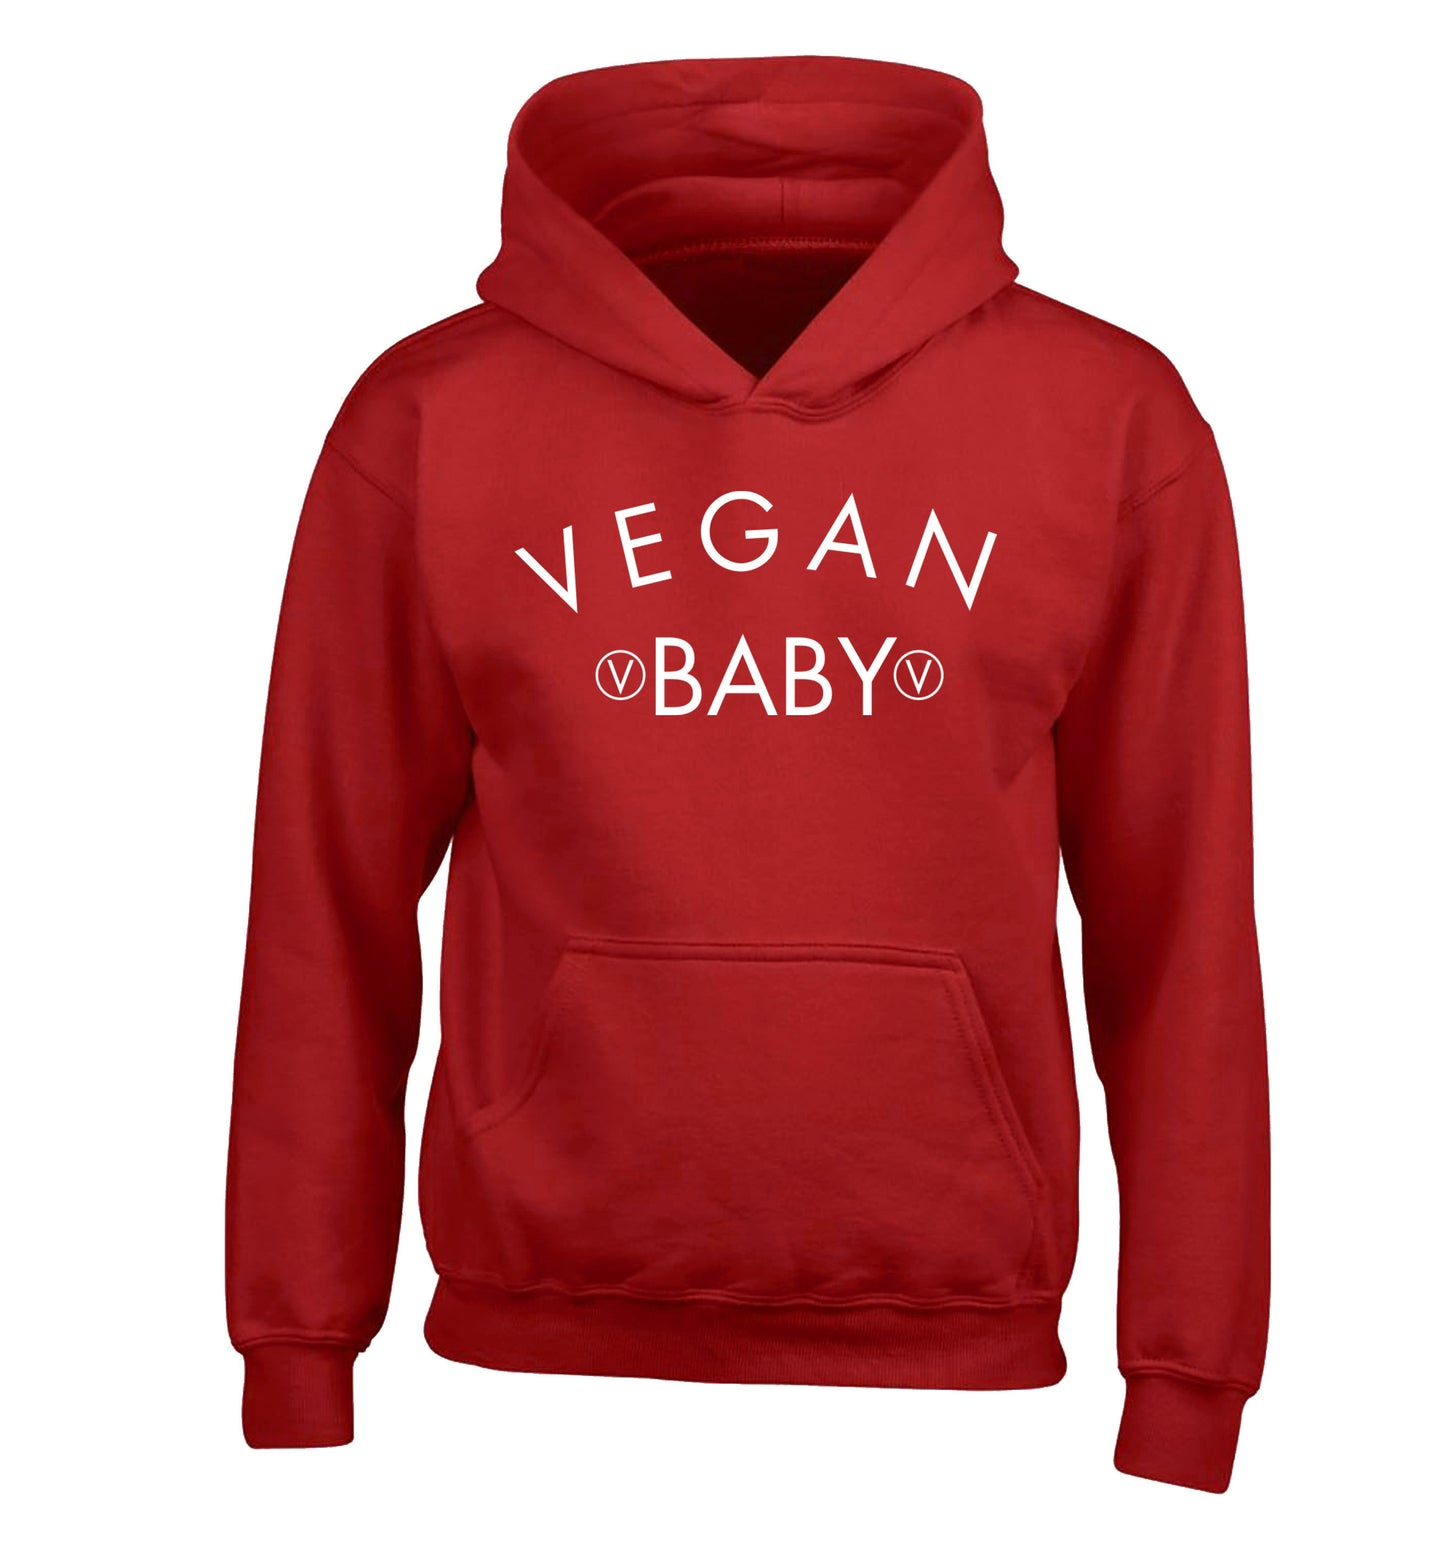 Vegan baby children's red hoodie 12-14 Years